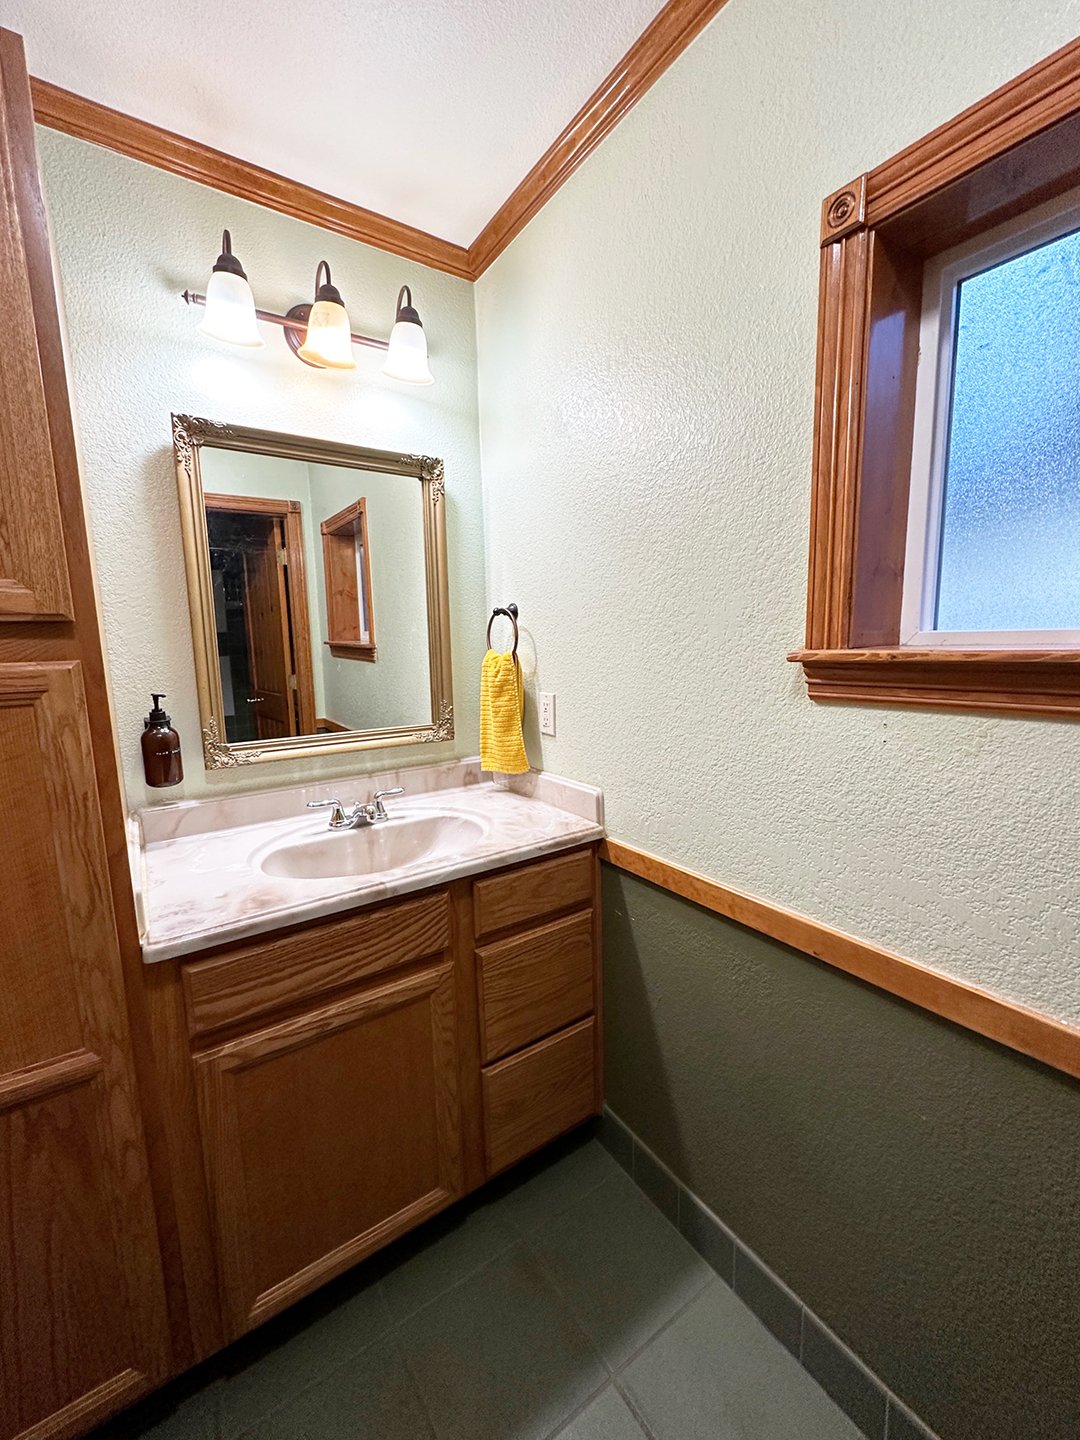 3 bathroom sink.jpg